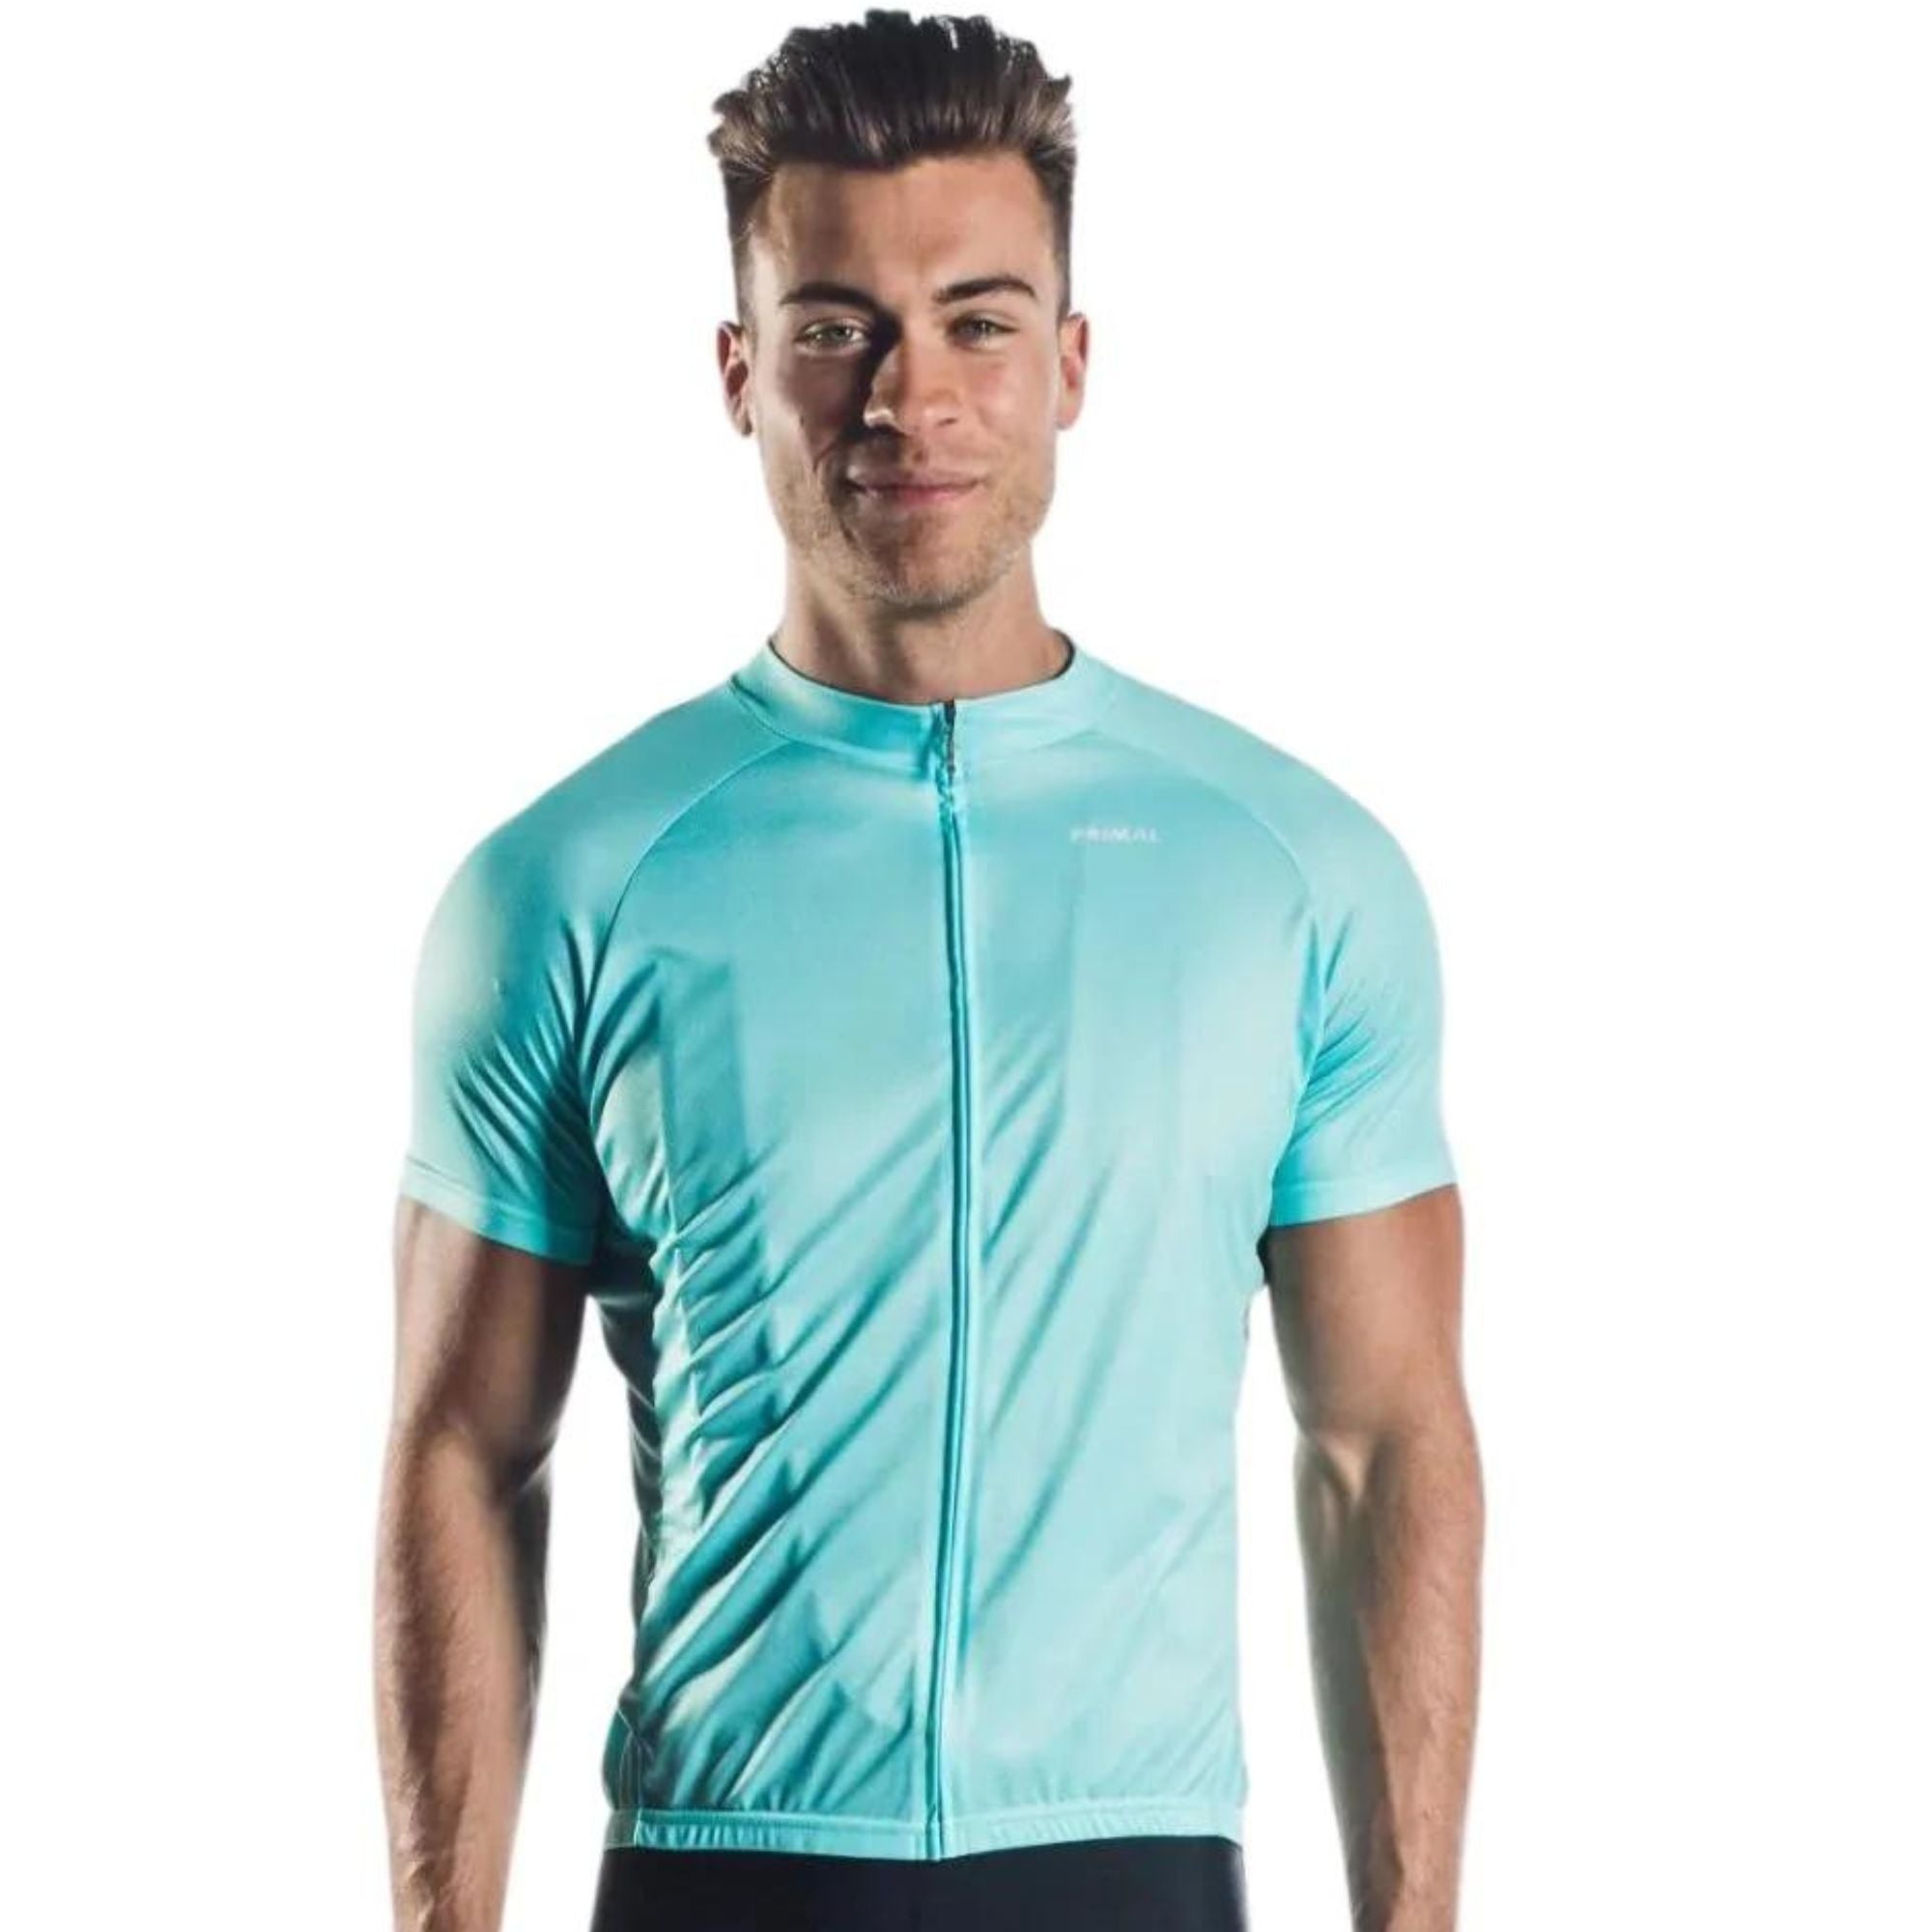 Primalwear Men's Sport Cut Jersey, Custom Cycling Jersey